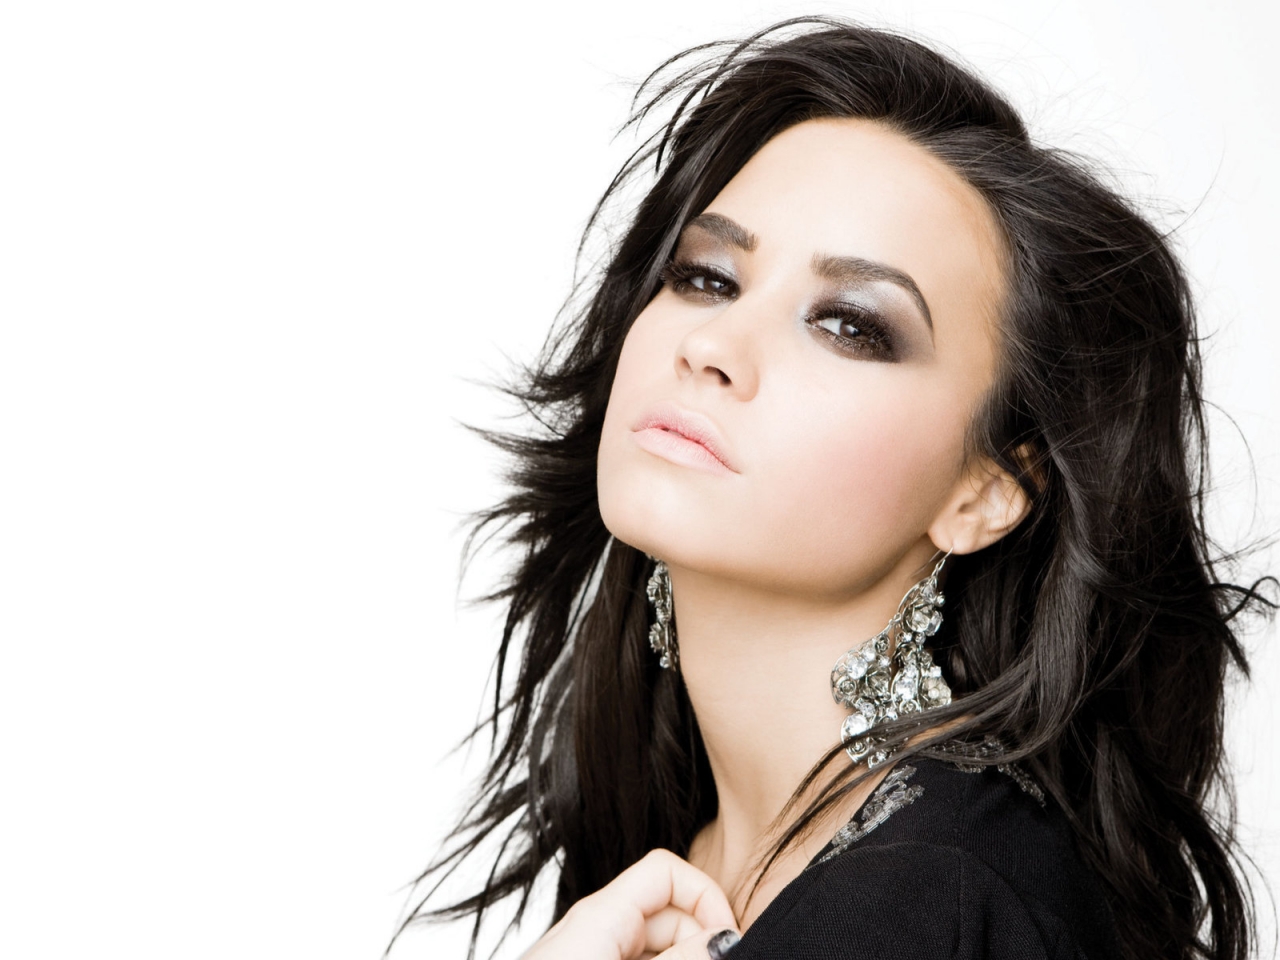 Demi Lovato Beautiful for 1280 x 960 resolution